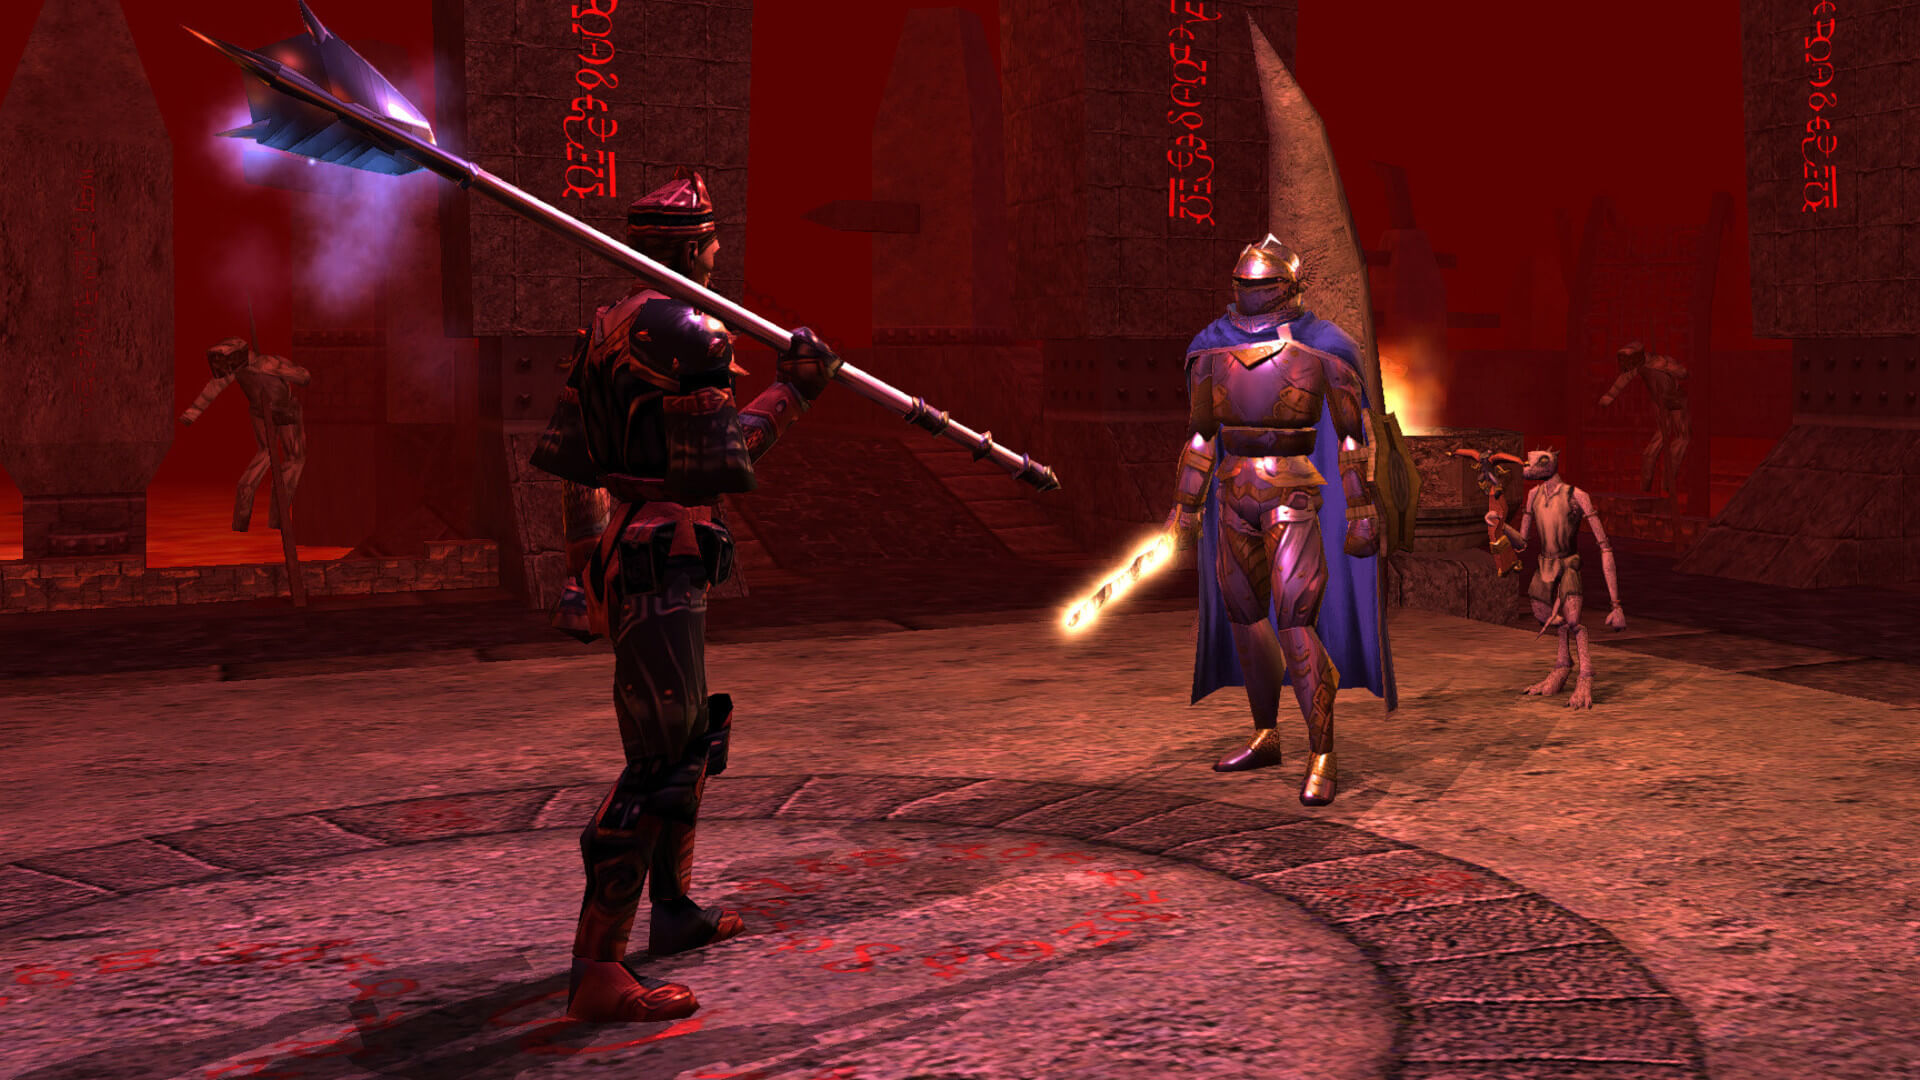 Dwie postacie stojące w wyraźnie złowrogim miejscu w Neverwinter Nights, pierwotnie opublikowanej przez Infogrames